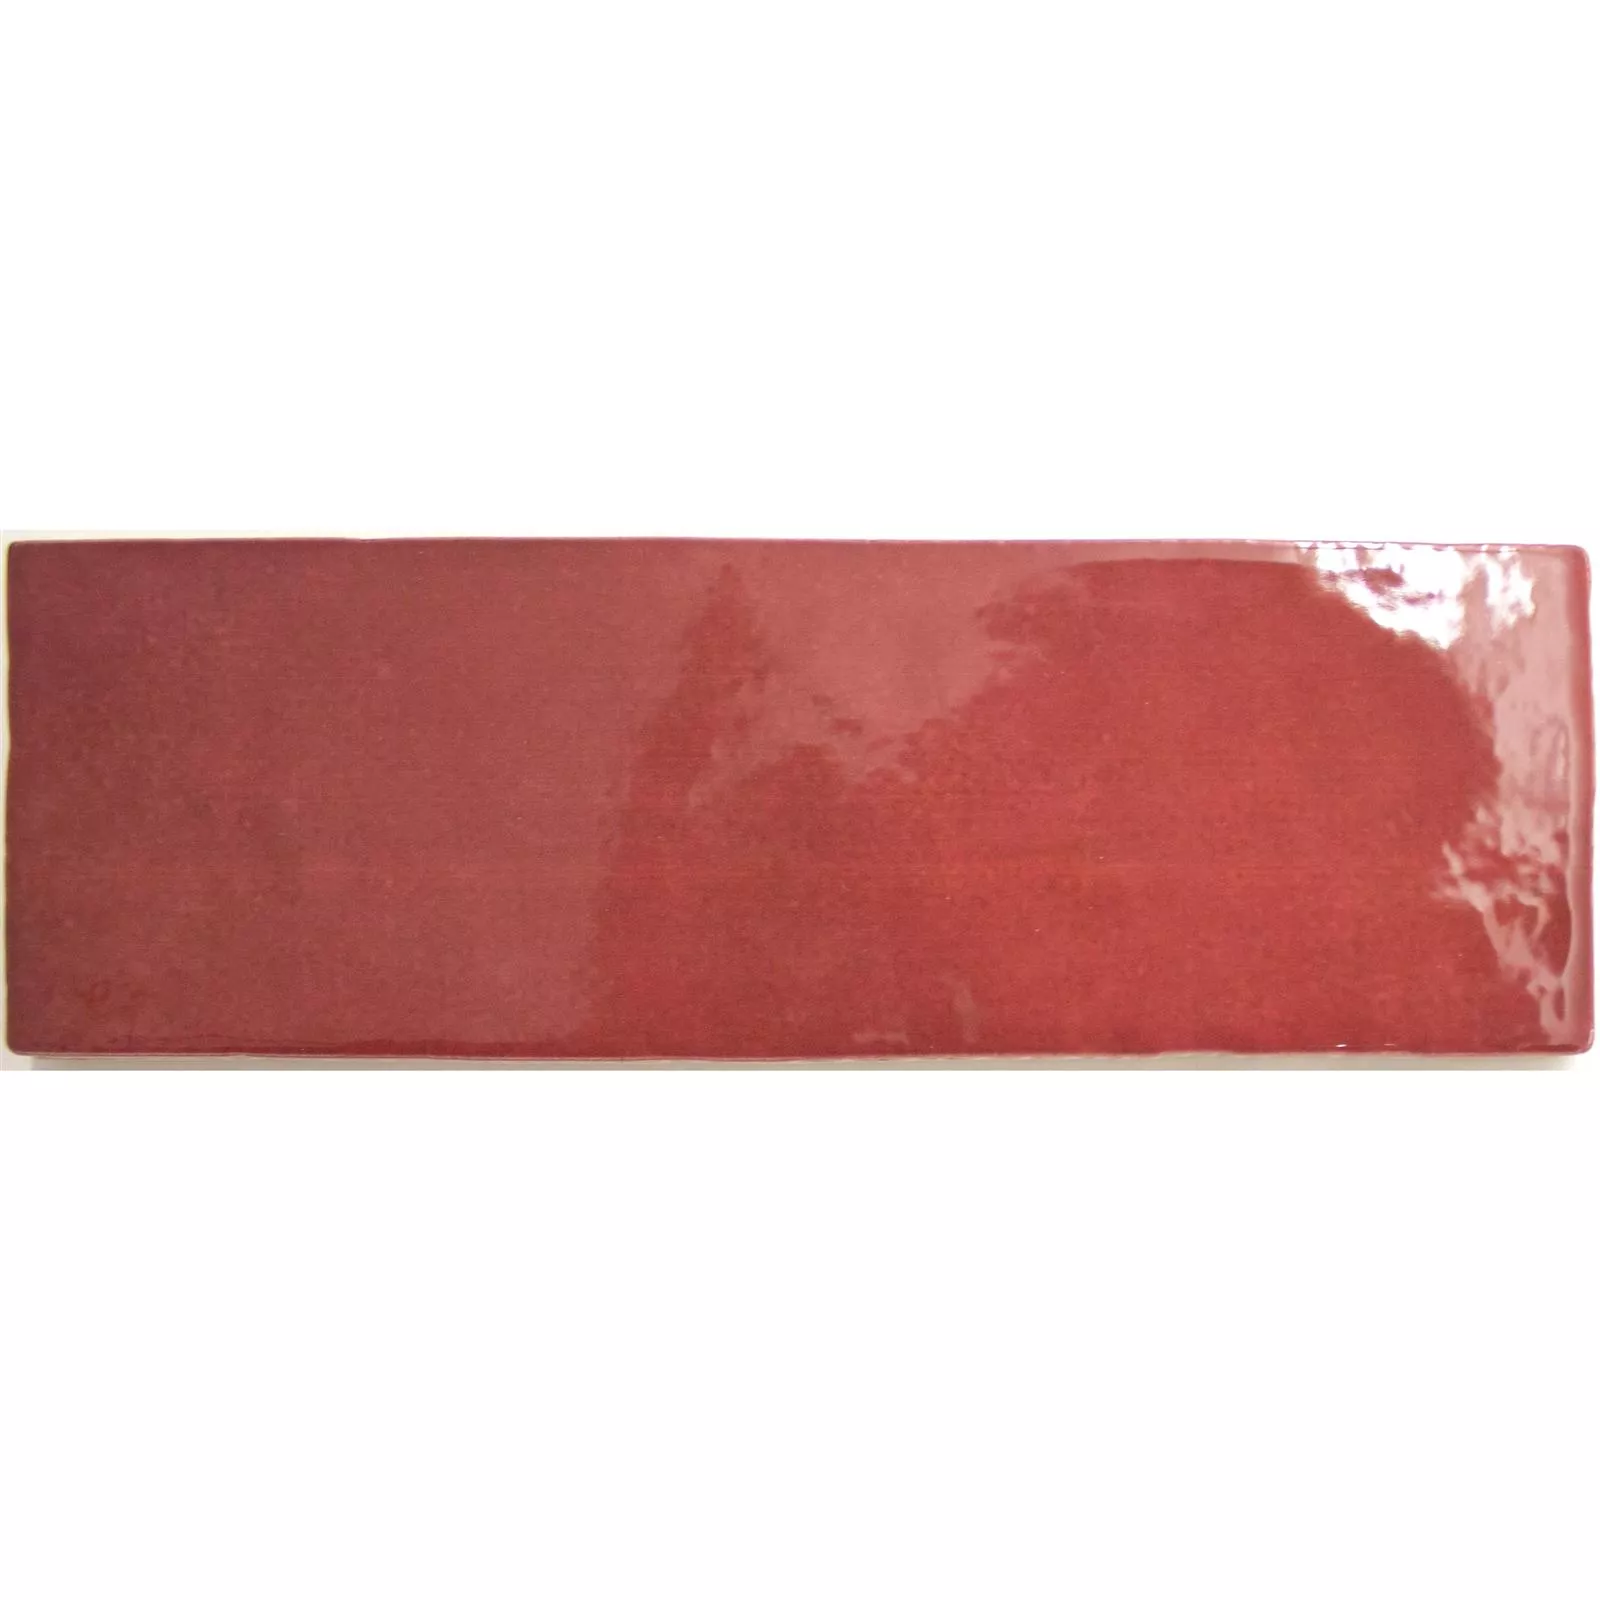 Πρότυπο Πλακάκια Tοίχου Concord Κυματική Οπτική Kόκκινο 6,5x20cm